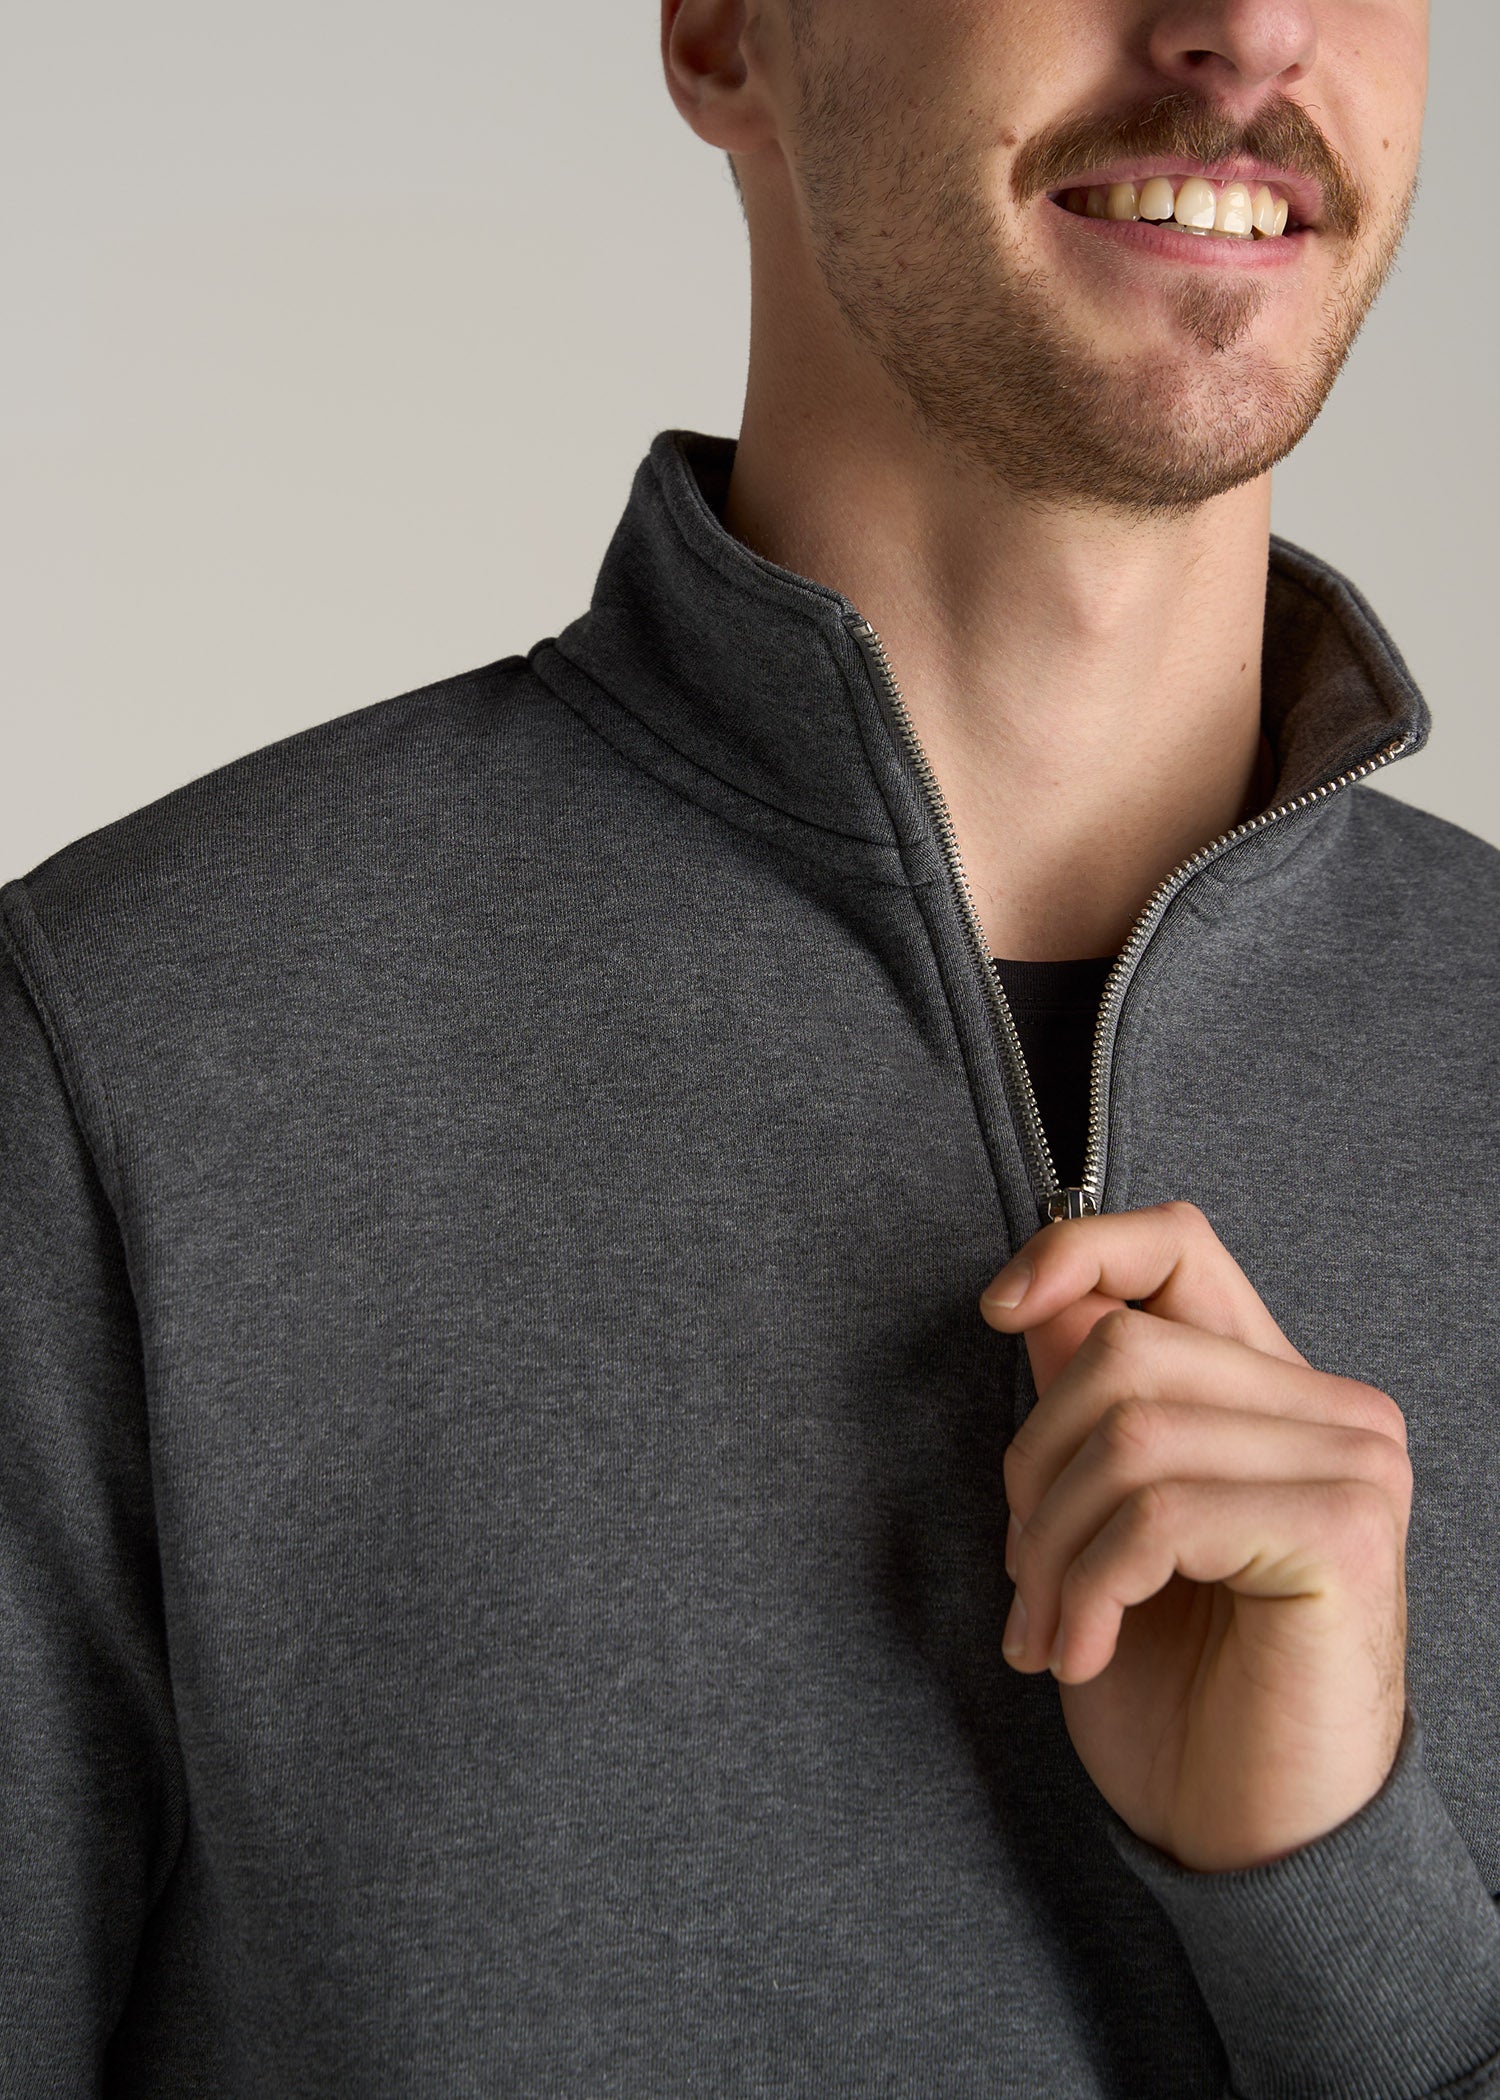 Wearever Fleece Quarter-Zip Tall Men's Sweatshirt in Charcoal Mix